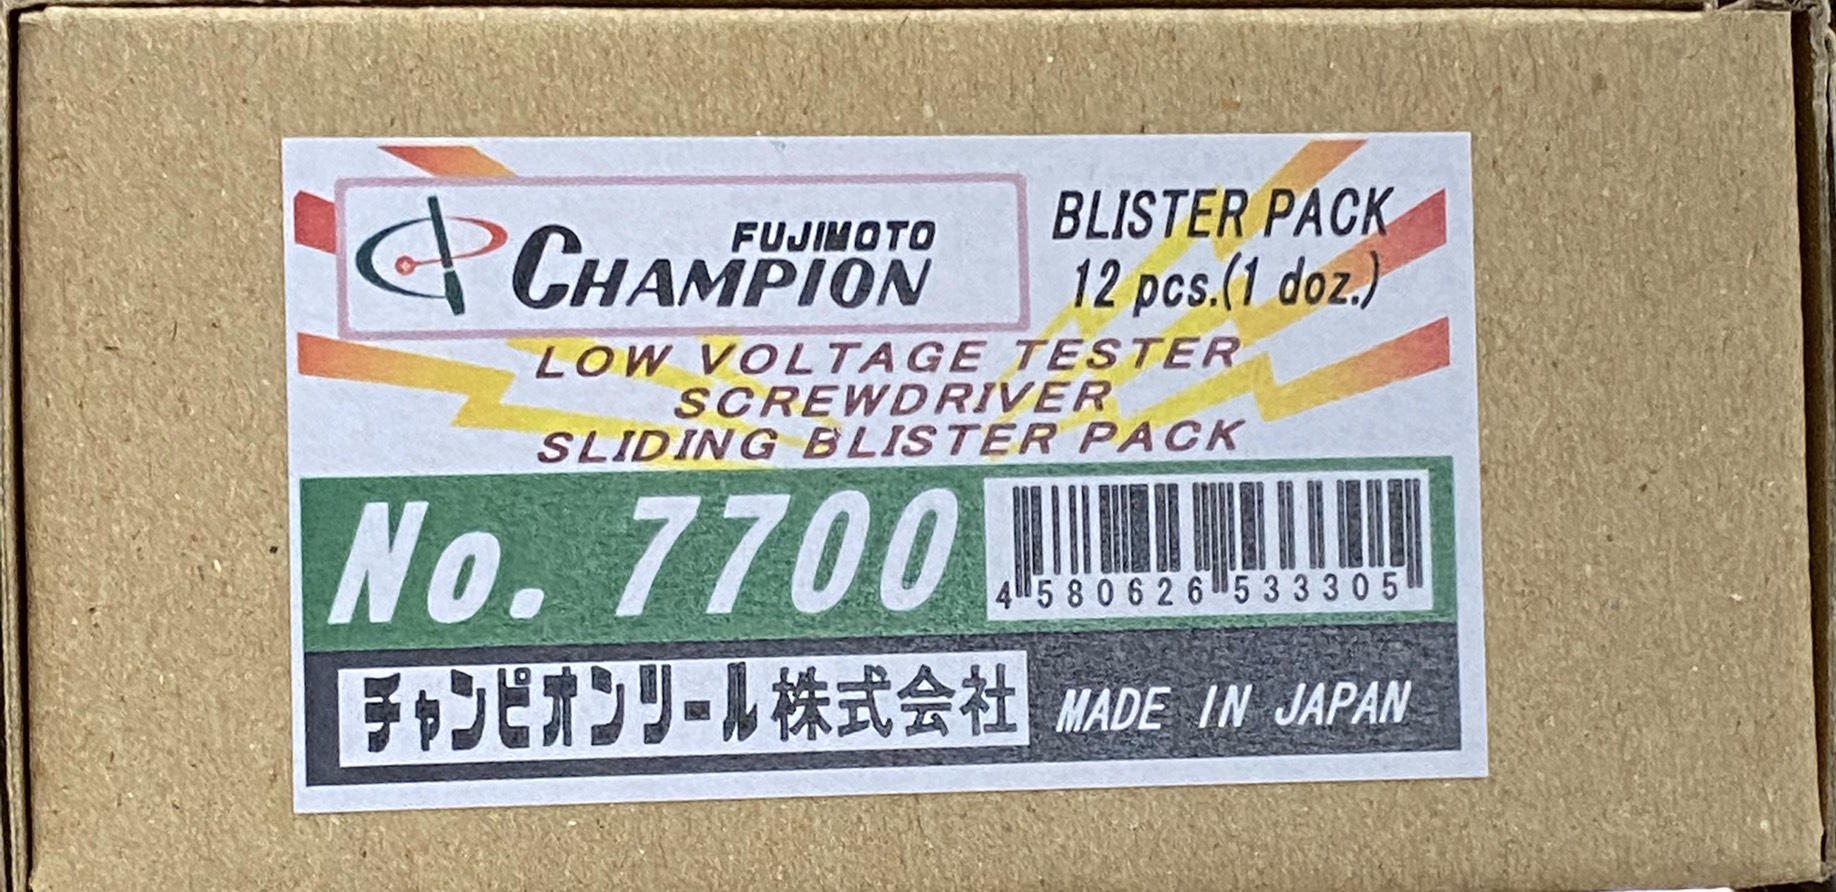 ไขควงเช็คไฟ CHAMPION NO.7700 ของญี่ปุ่น แท้100% กล่องละ 12อัน